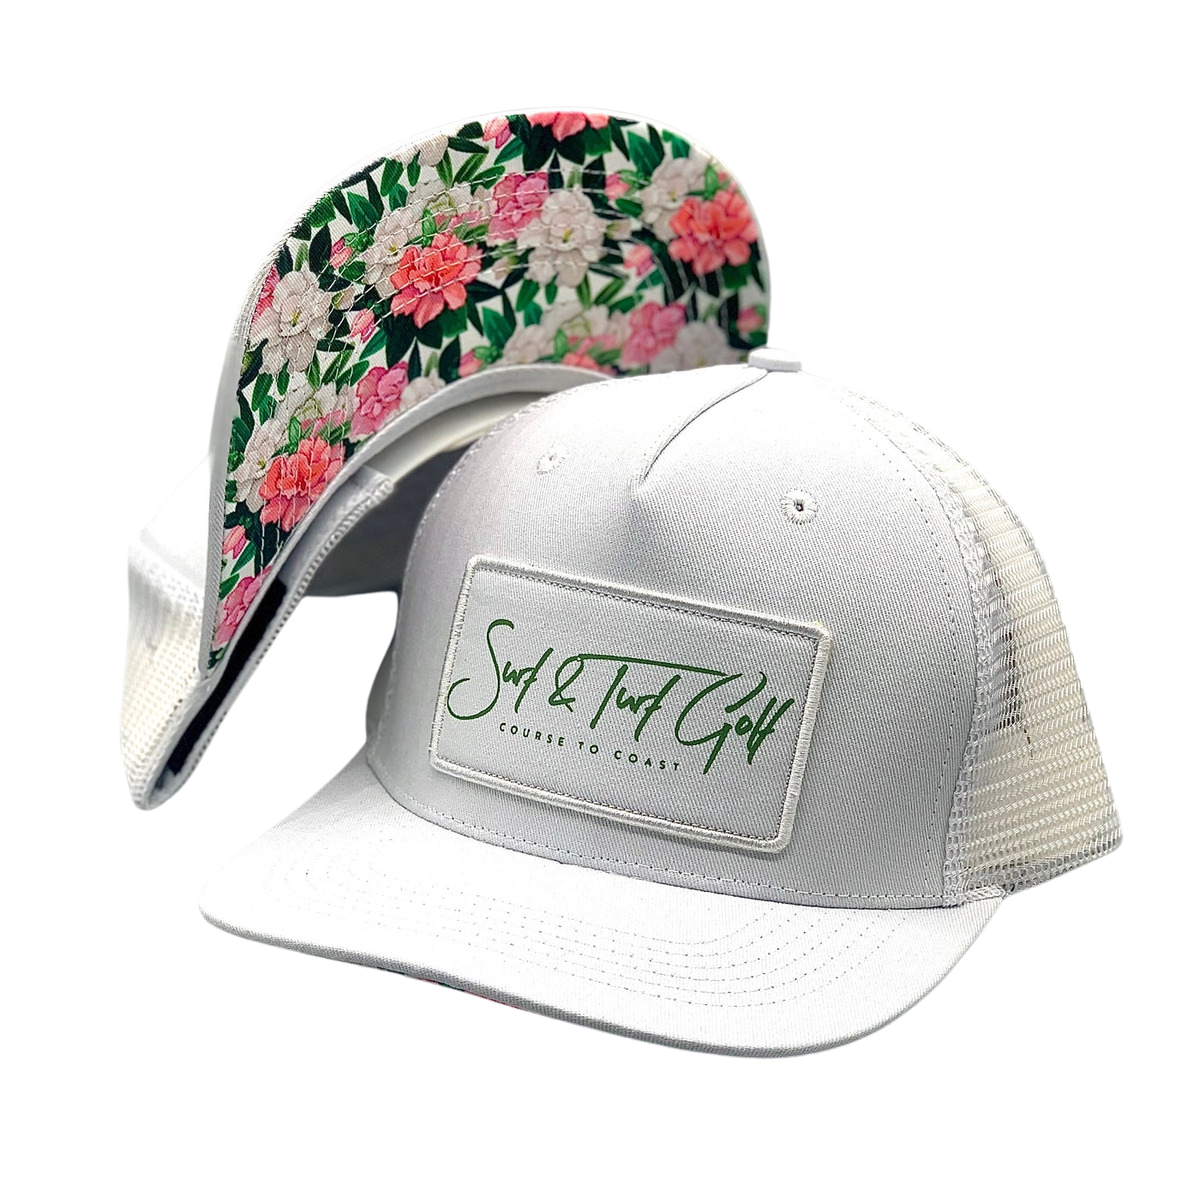 Surf & Turf Golf Telles Azalea Snapback Hat